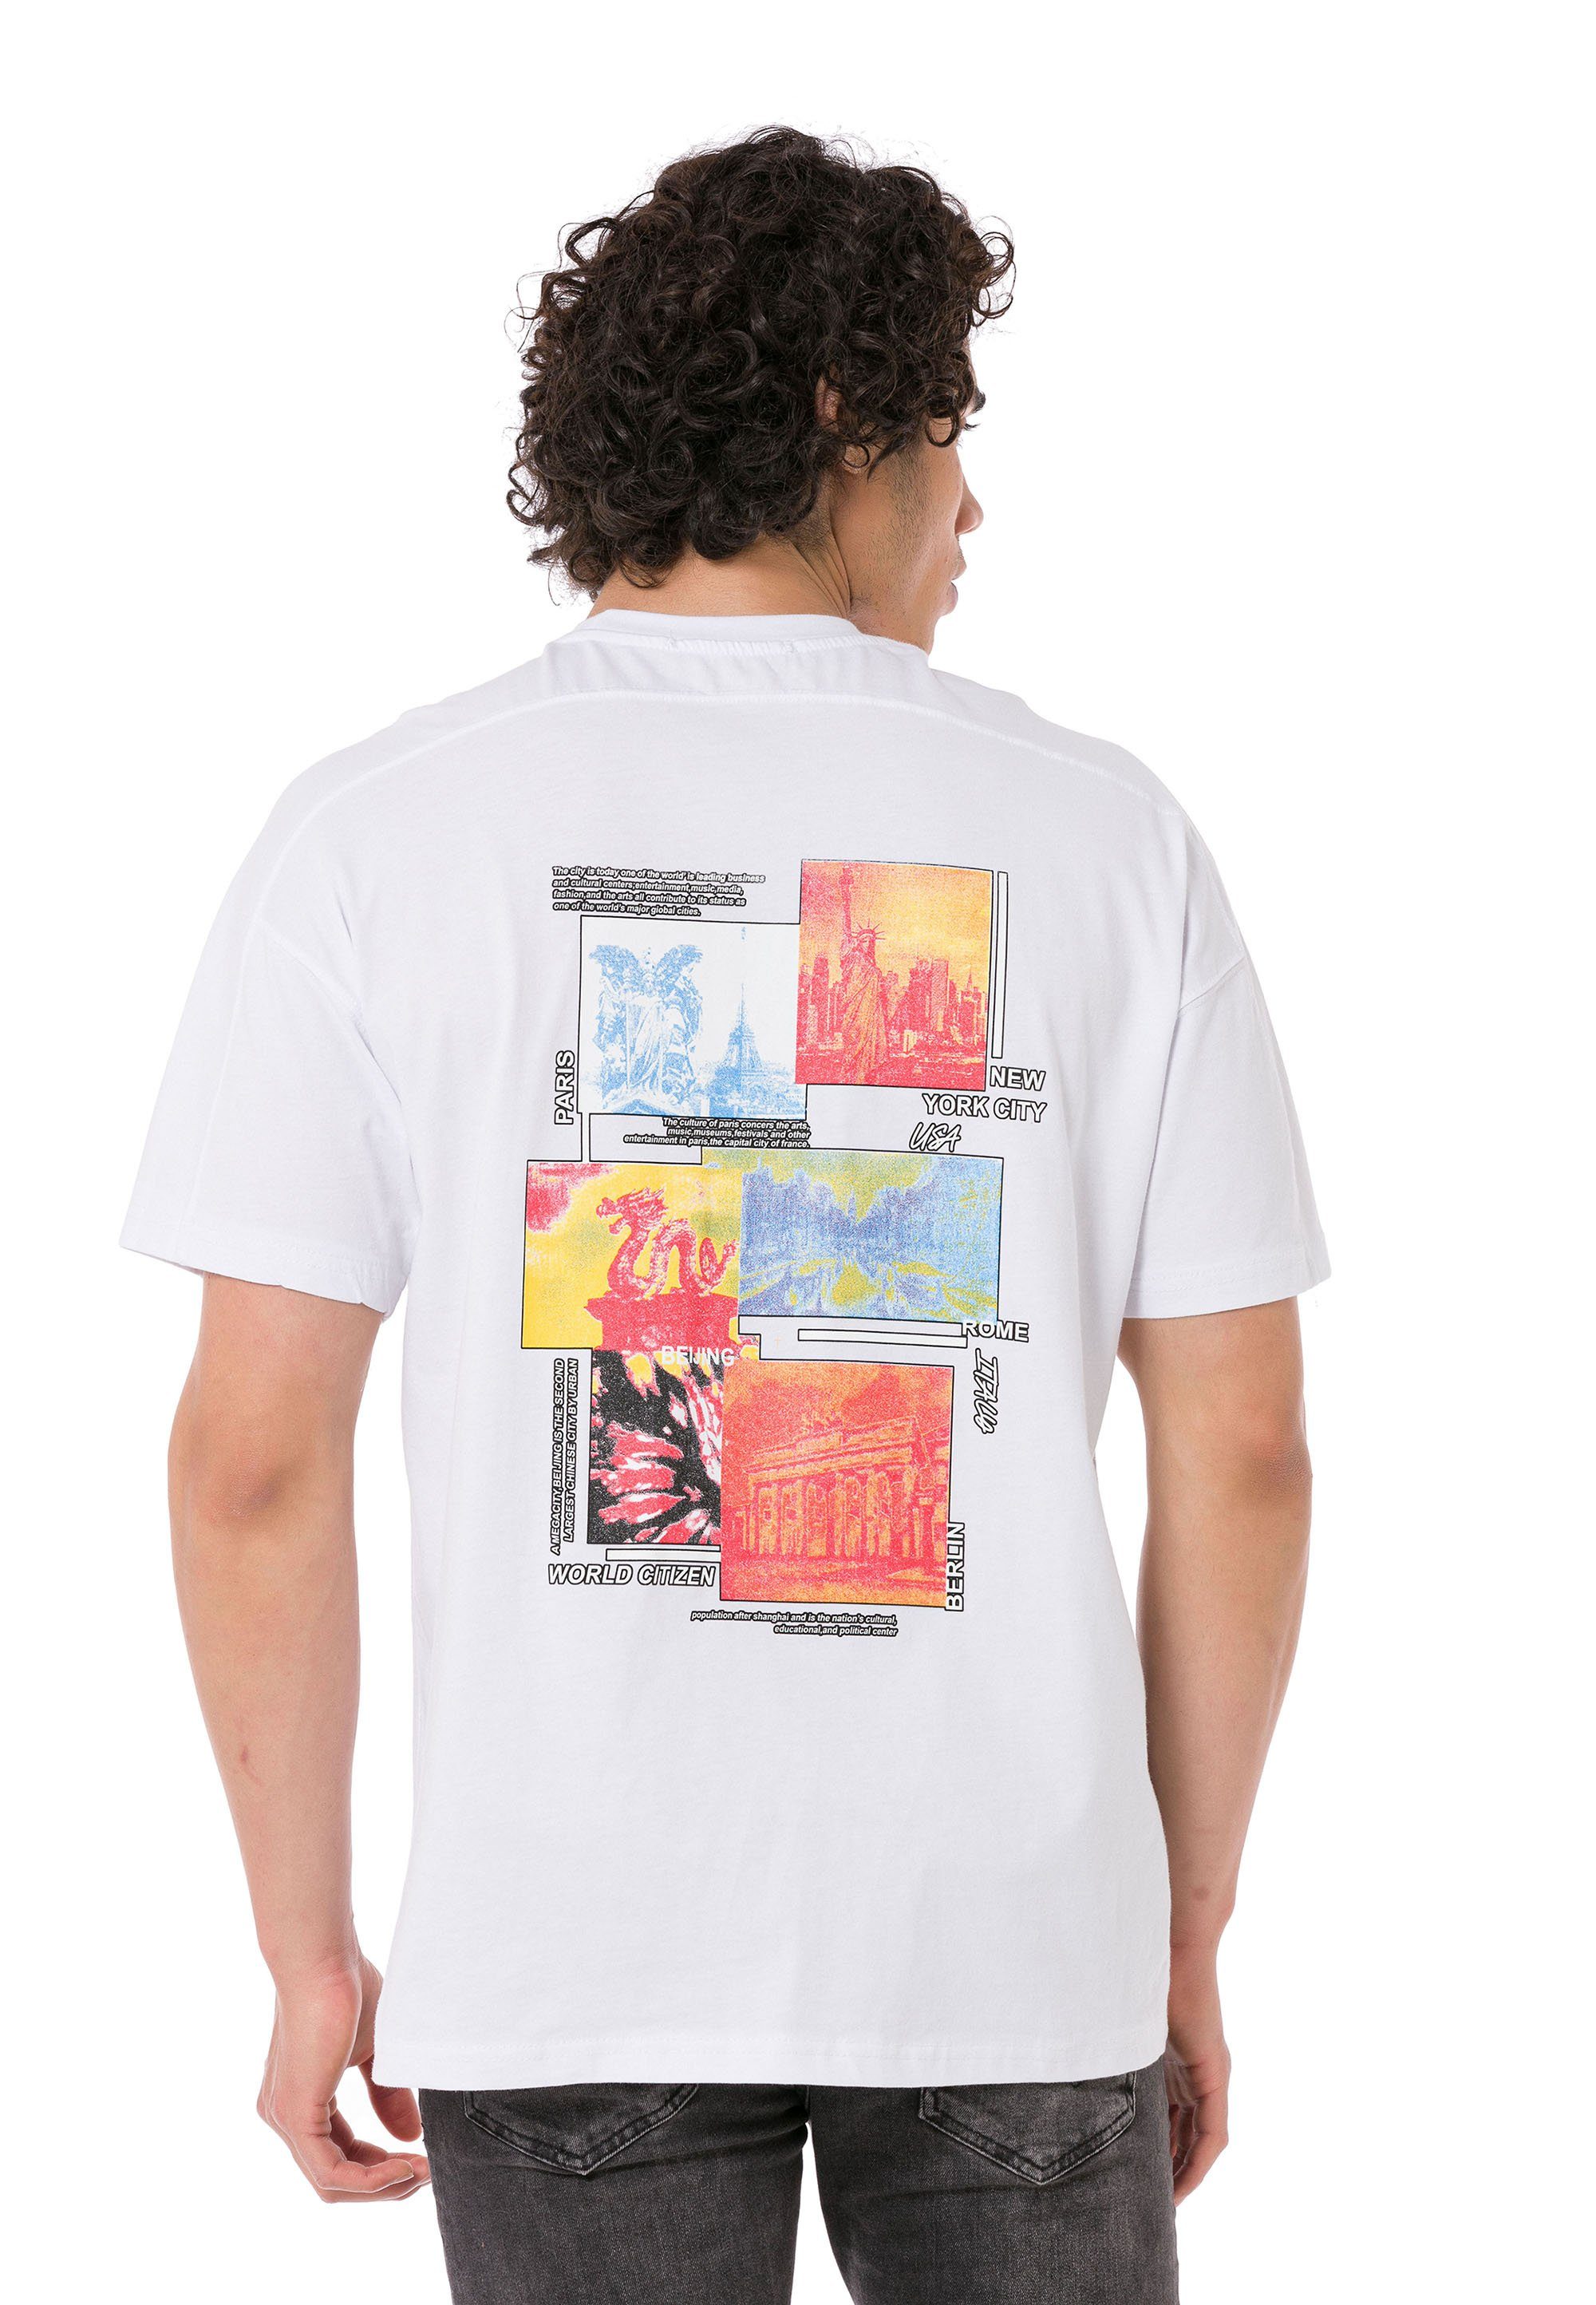 Halesowen weiß großem RedBridge Rückenprint T-Shirt mit